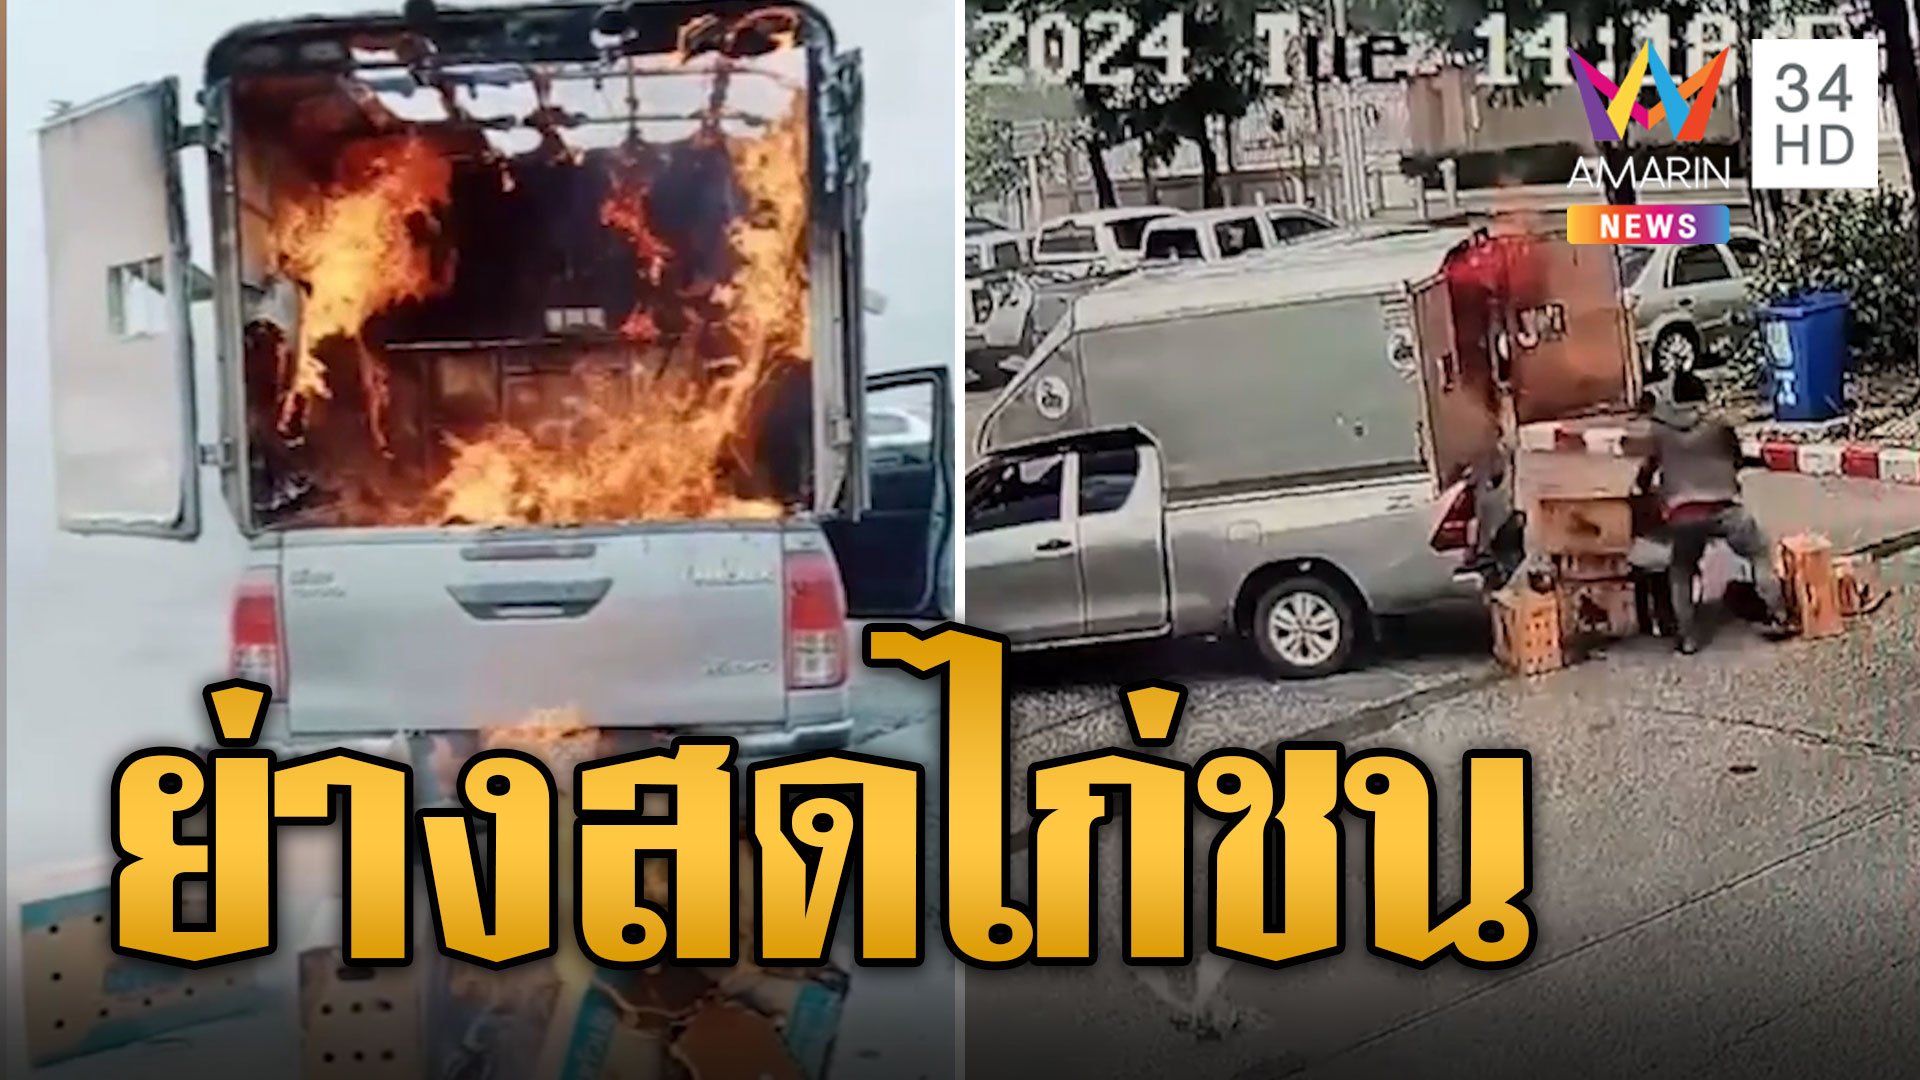 เหลือแต่ซาก! ไฟไหม้รถขนไก่ชนย่างสด 20 ตัว สูญนับแสน | ข่าวอรุณอมรินทร์ | 12 มิ.ย. 67 | AMARIN TVHD34